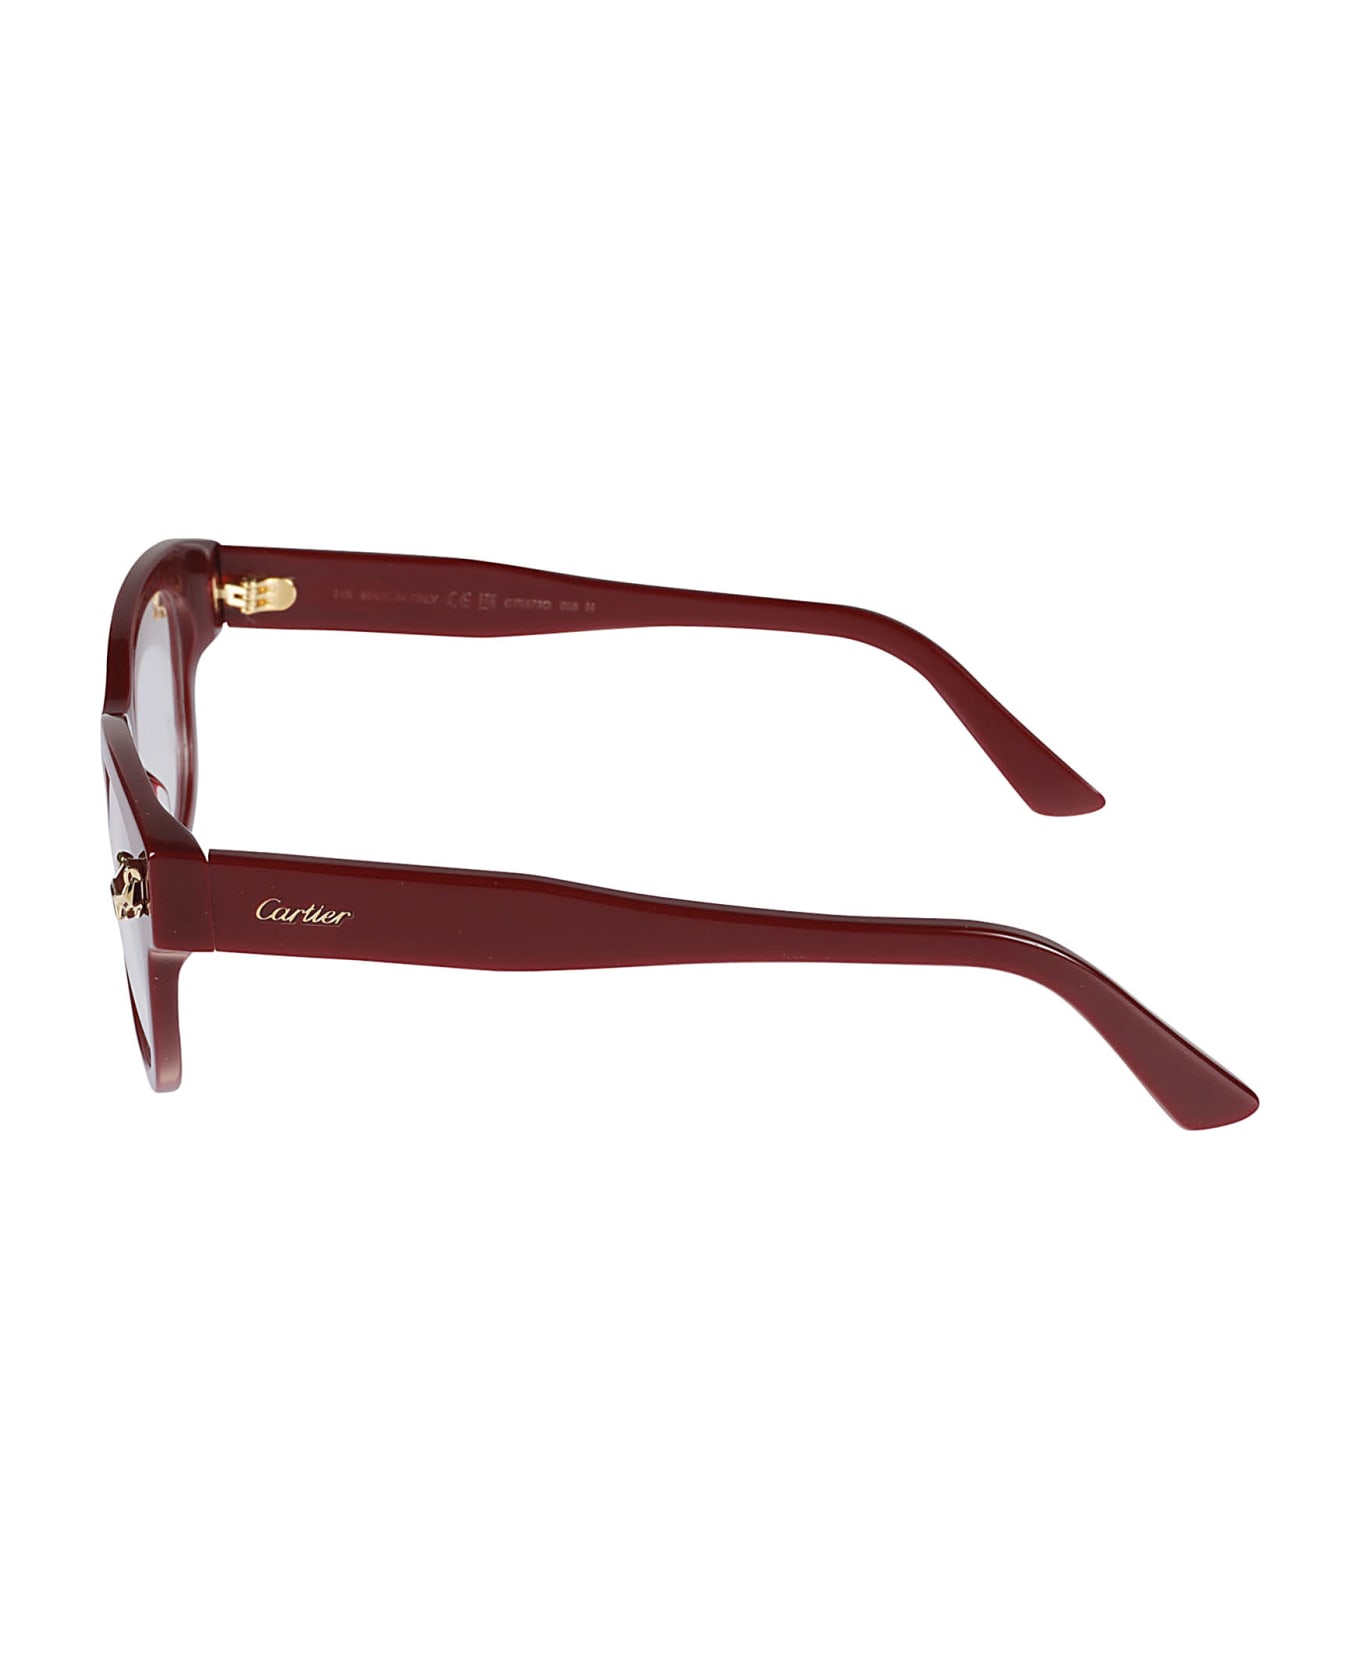 Cartier Eyewear Panthere Glasses - 003 burgundy burgundy tra